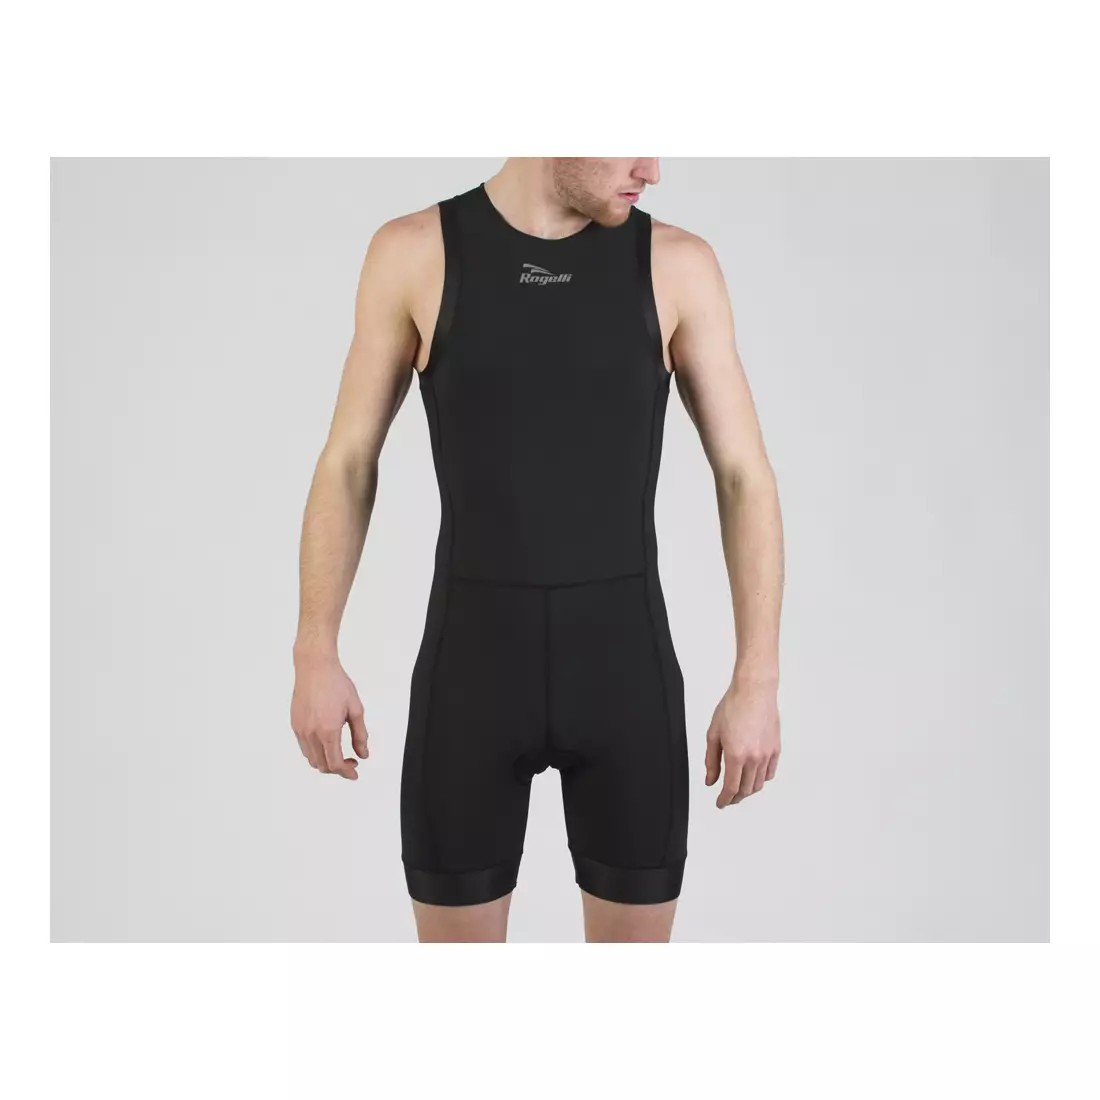 ROGELLI TAUPO 030.006 men's triathlon suit, black and fluo